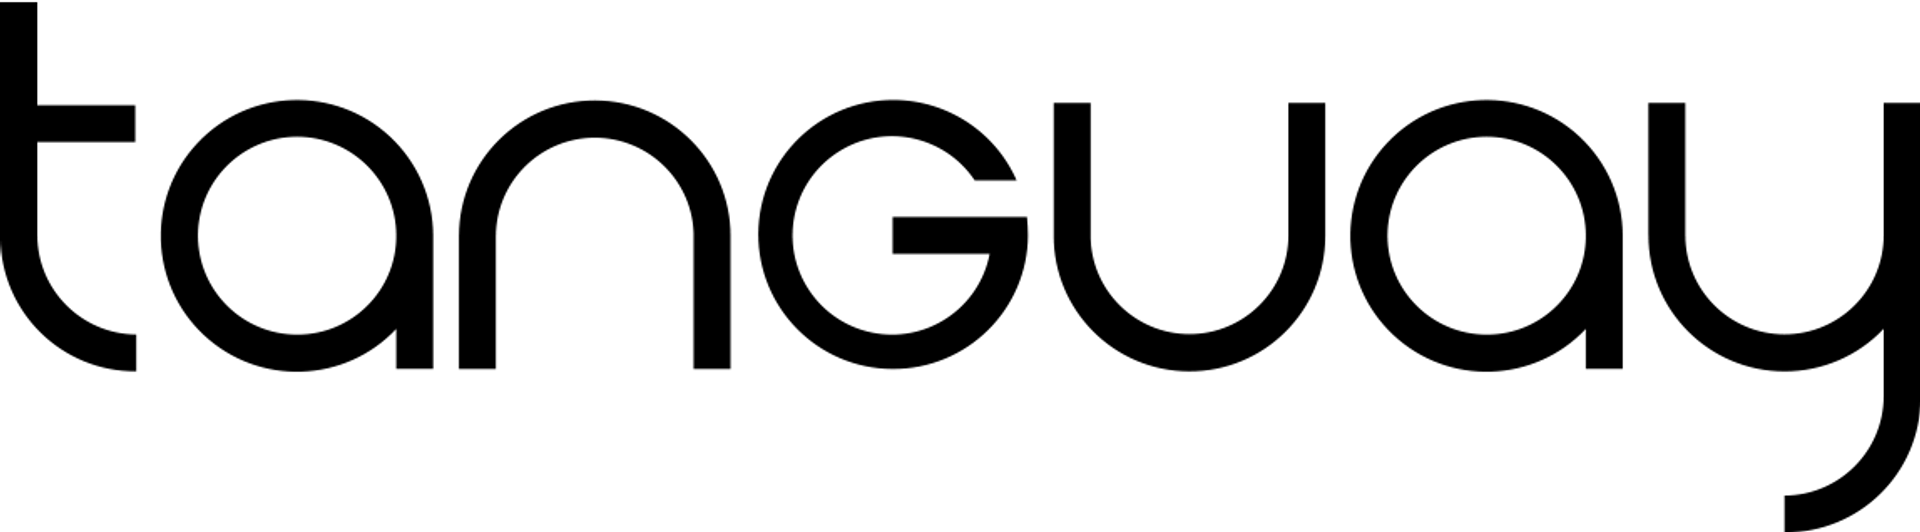 TANGUAY logo de circulaires